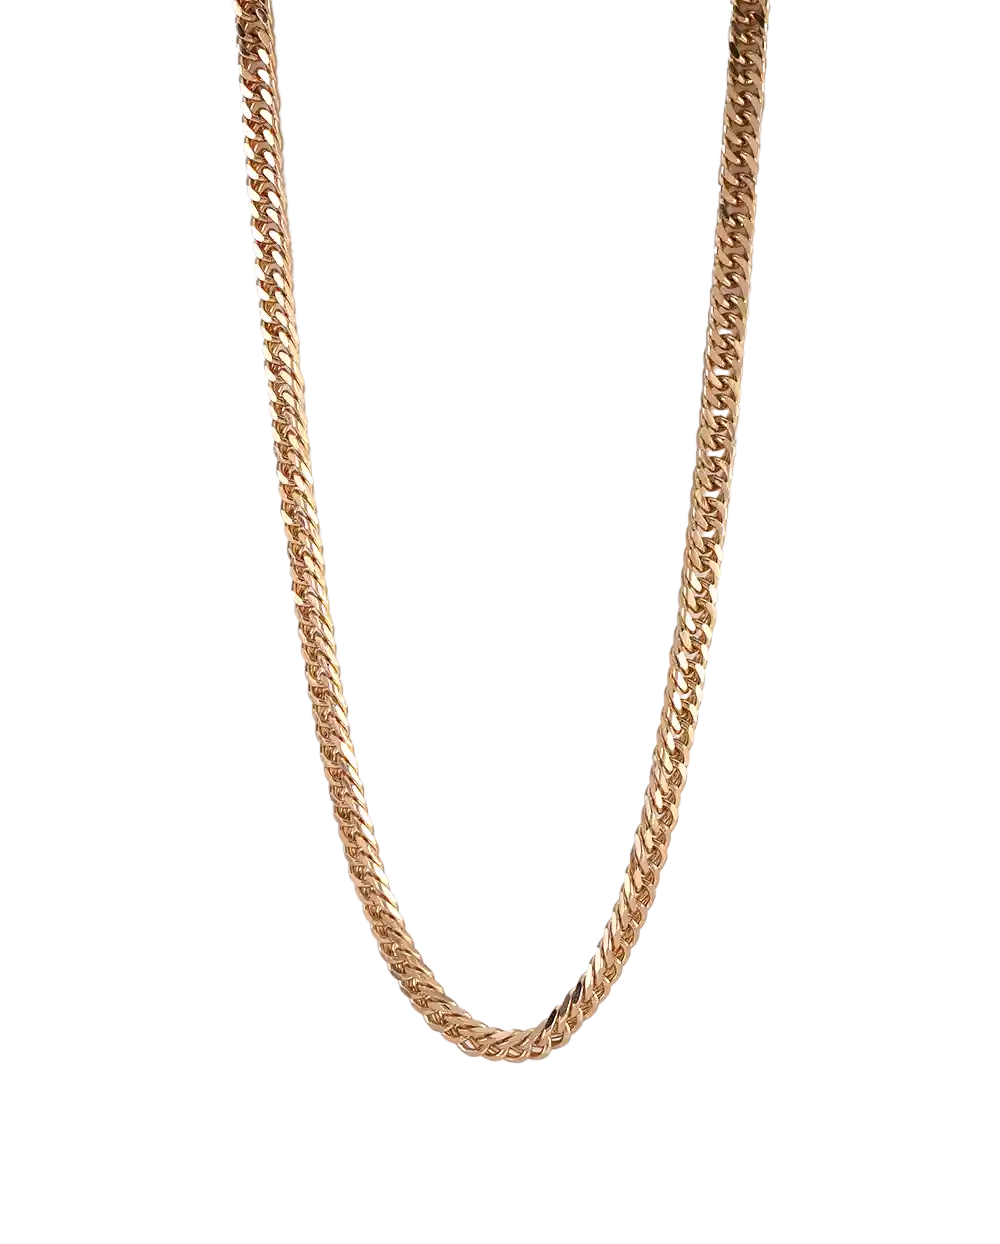 خرید گردنبند زنجیری زنانه مدل 1841 رنگ طلایی قیمت 189 هزارتومان به همراه ارسال رایگان به سراسر ایران درب منزل و جعبه ی کادویی شیک و قشنگ